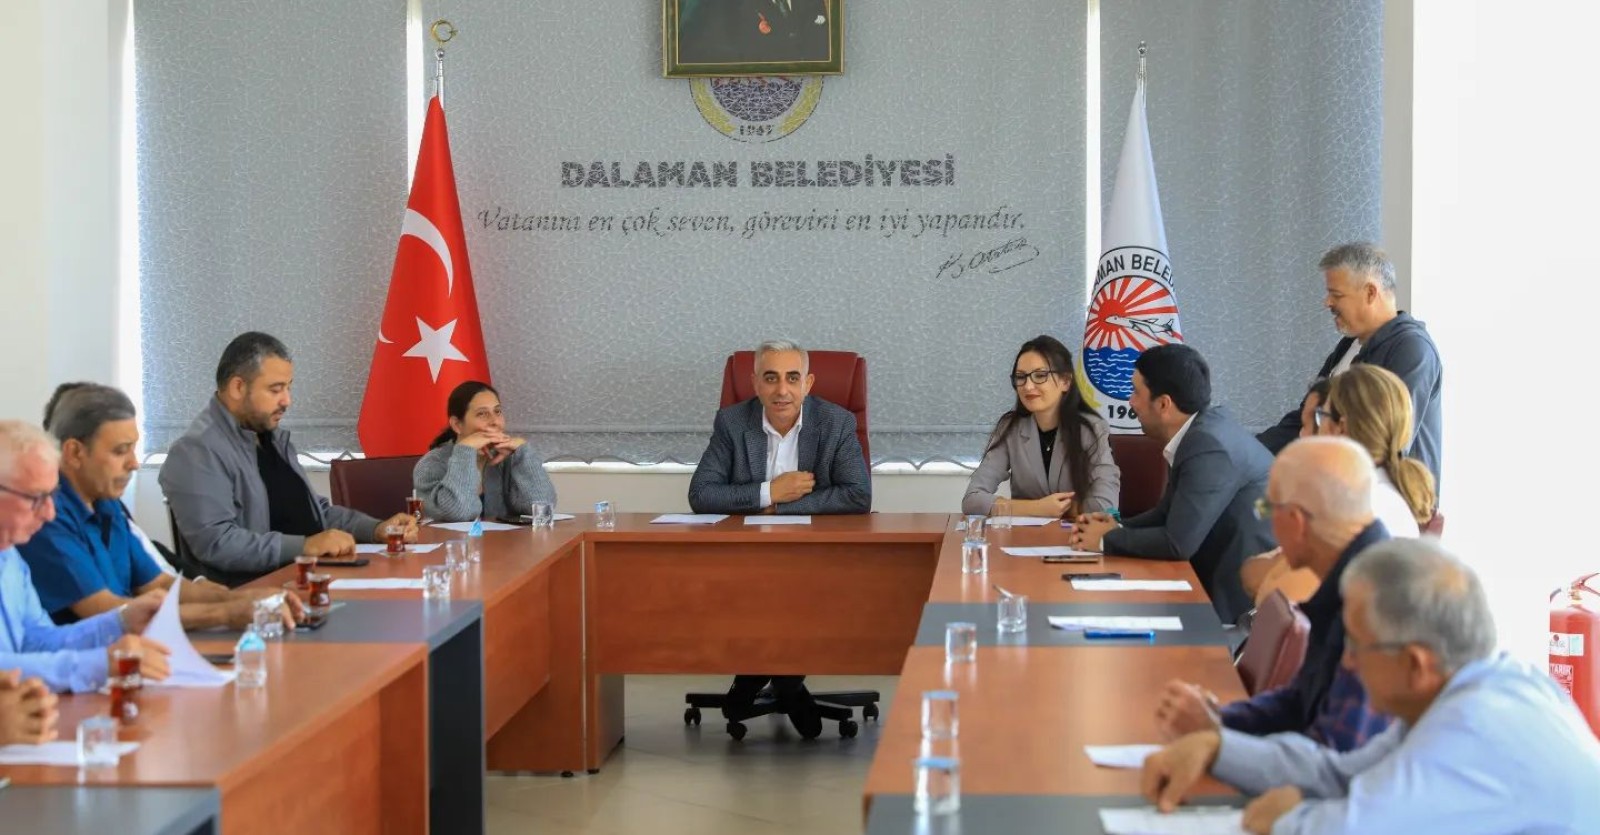 2022 Yılı Kasım Ayı Meclis Toplantısı, Belediye Başkanımız Muhammet Karakuş başkanlığında gerçekleştirilmiştir.